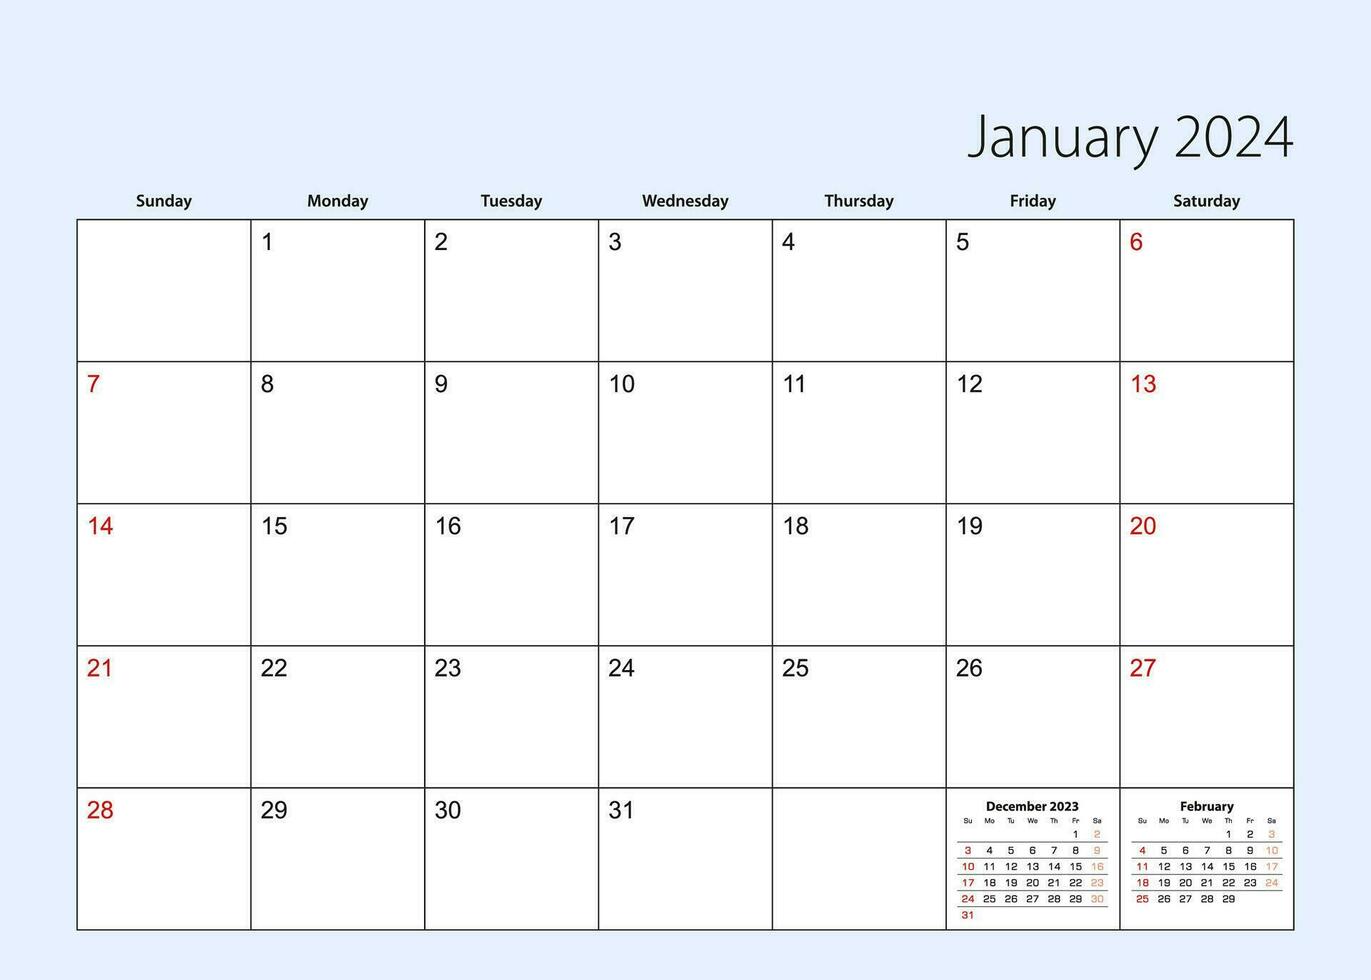 vägg kalender planerare för januari 2024. engelsk språk, vecka börjar från söndag. vektor